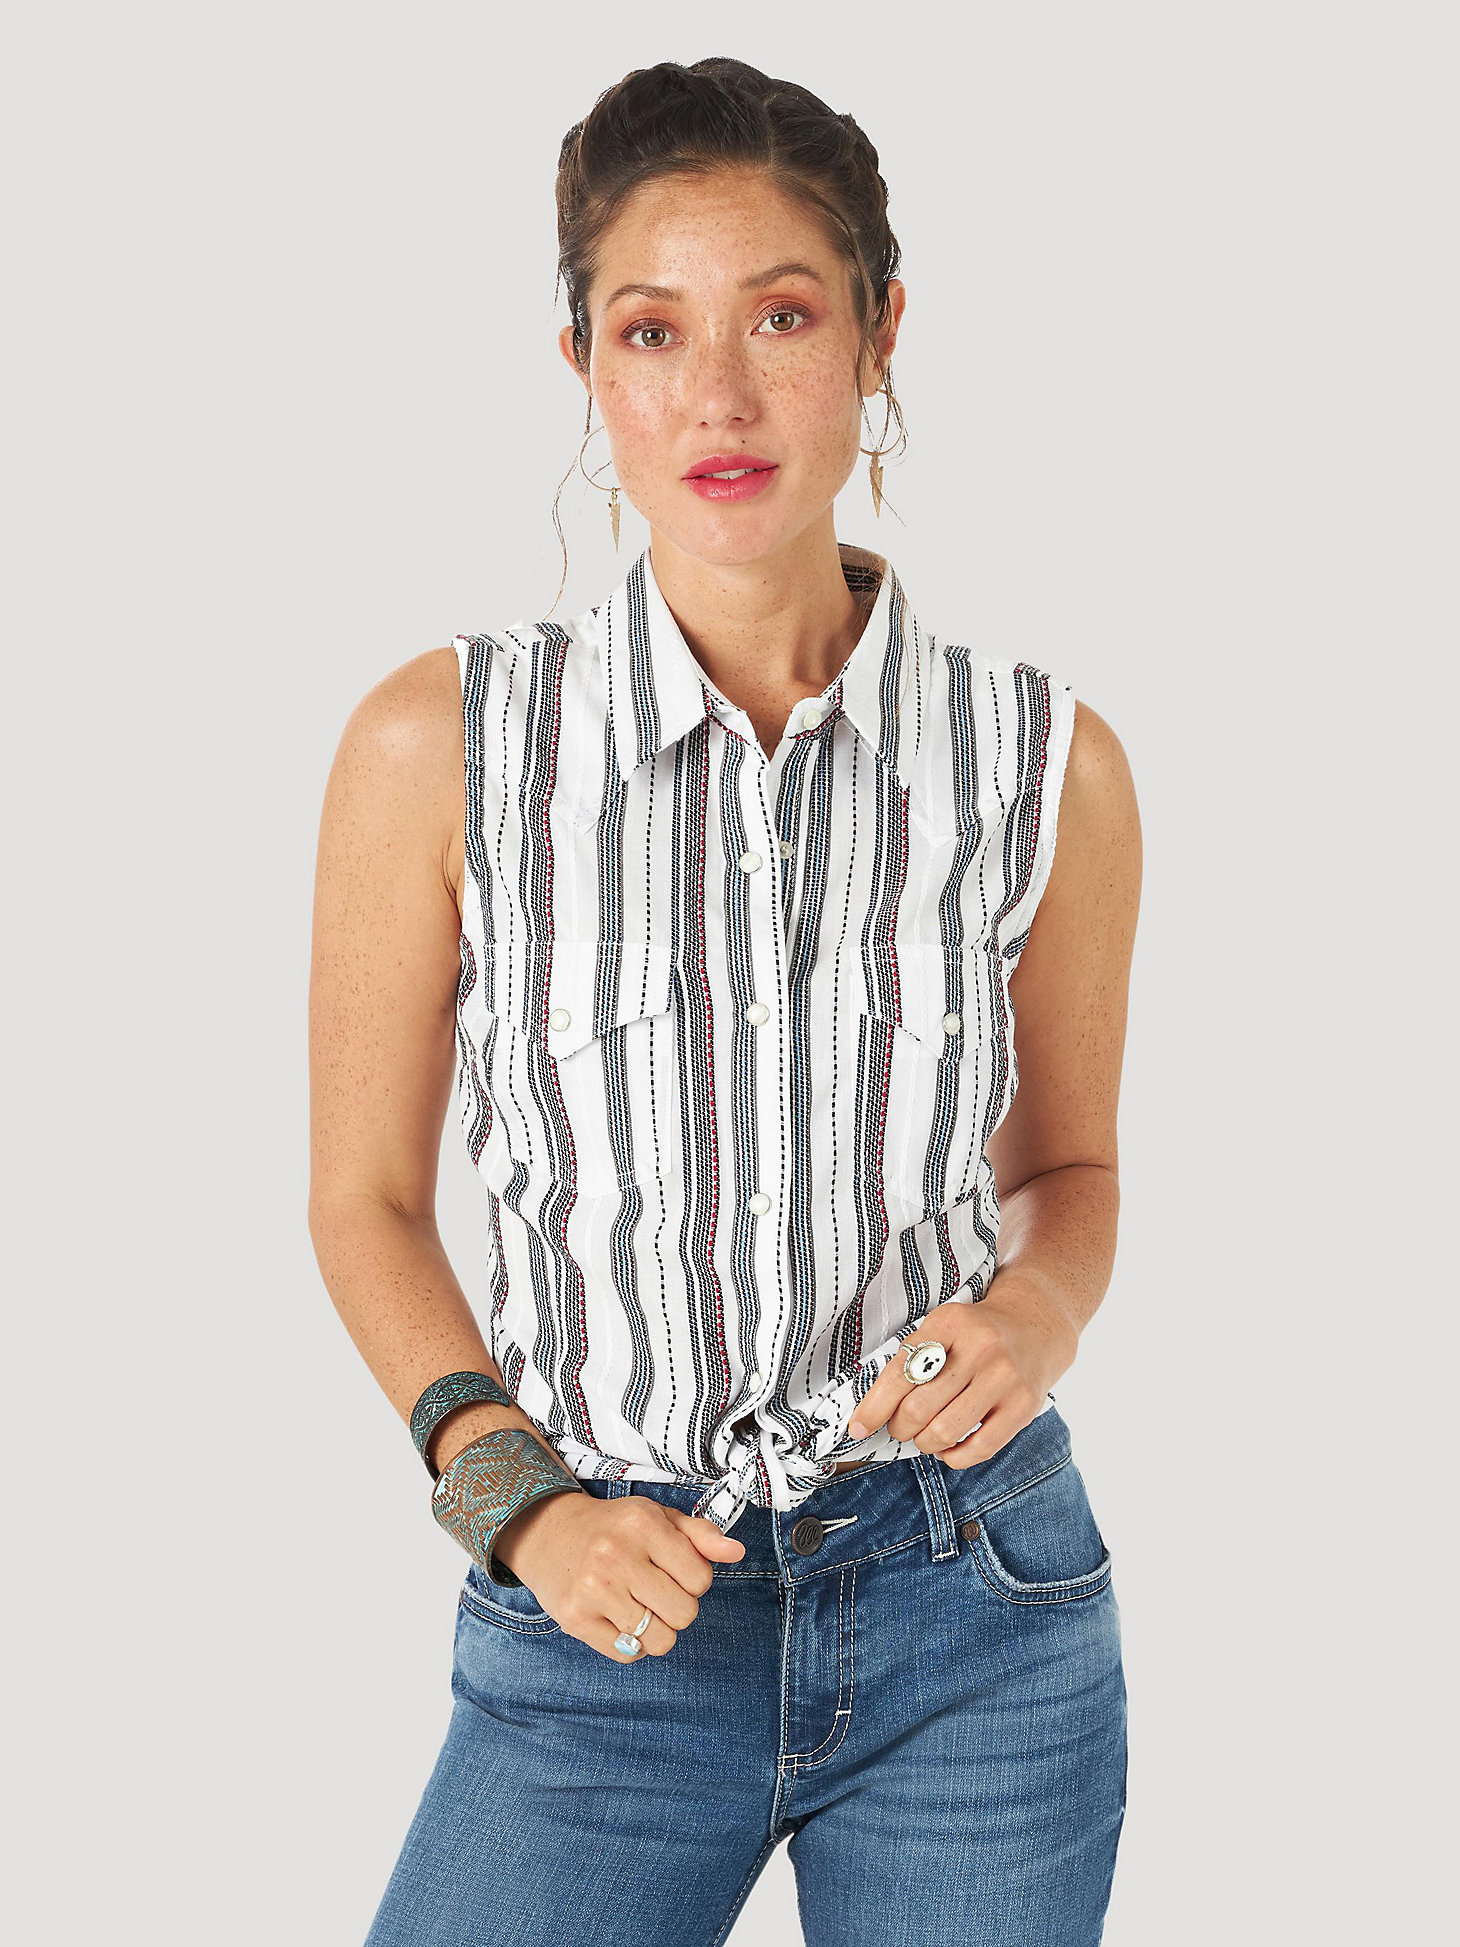 Women's Wrangler Retro® Sleeveless Print Western Snap Top in White Stripes main view